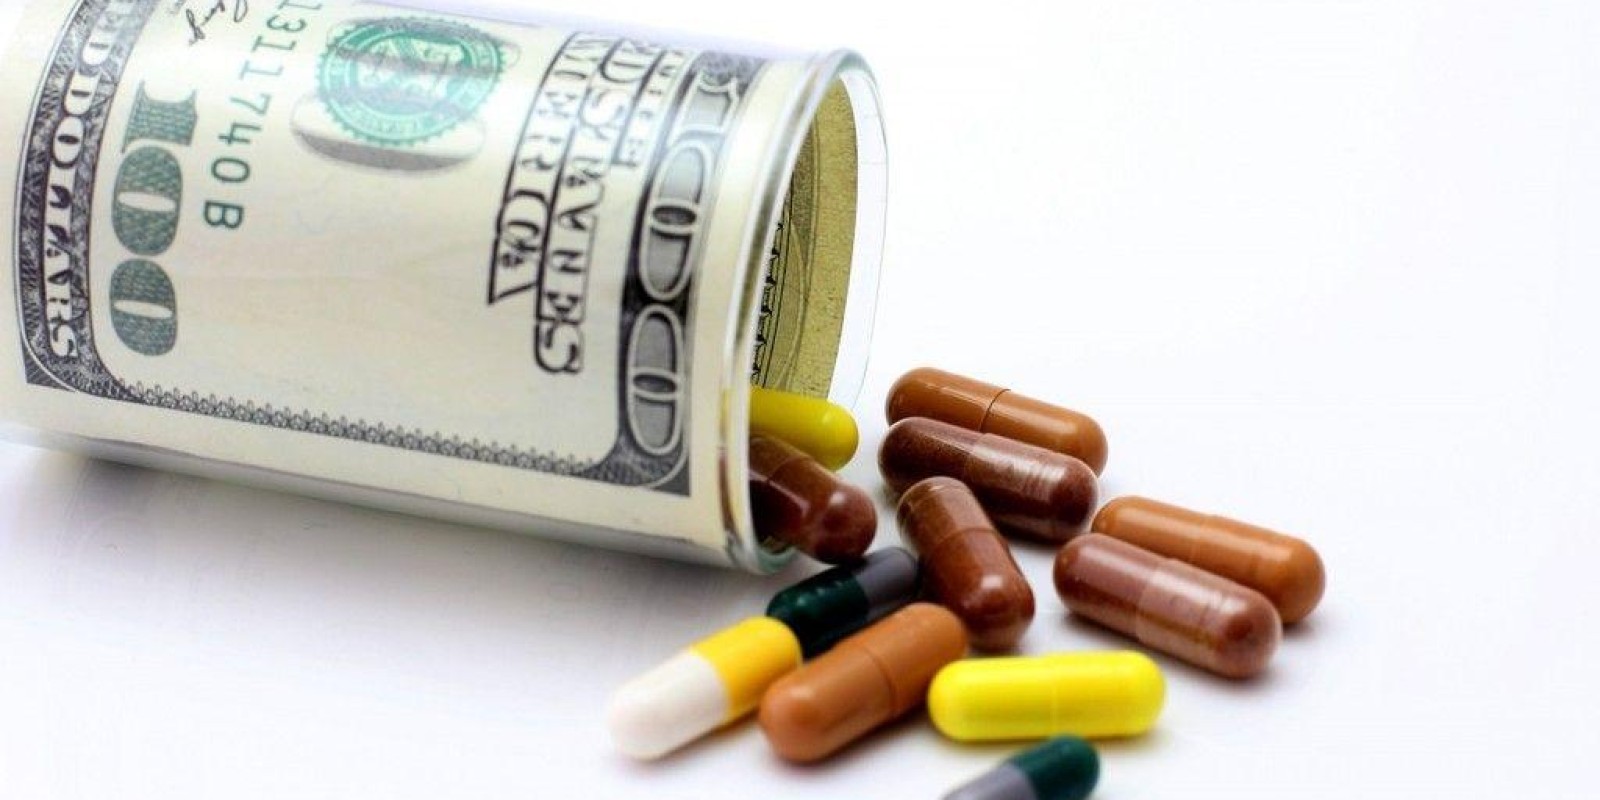  Artigo 5º - Fornecimento de medicamentos de alto custo